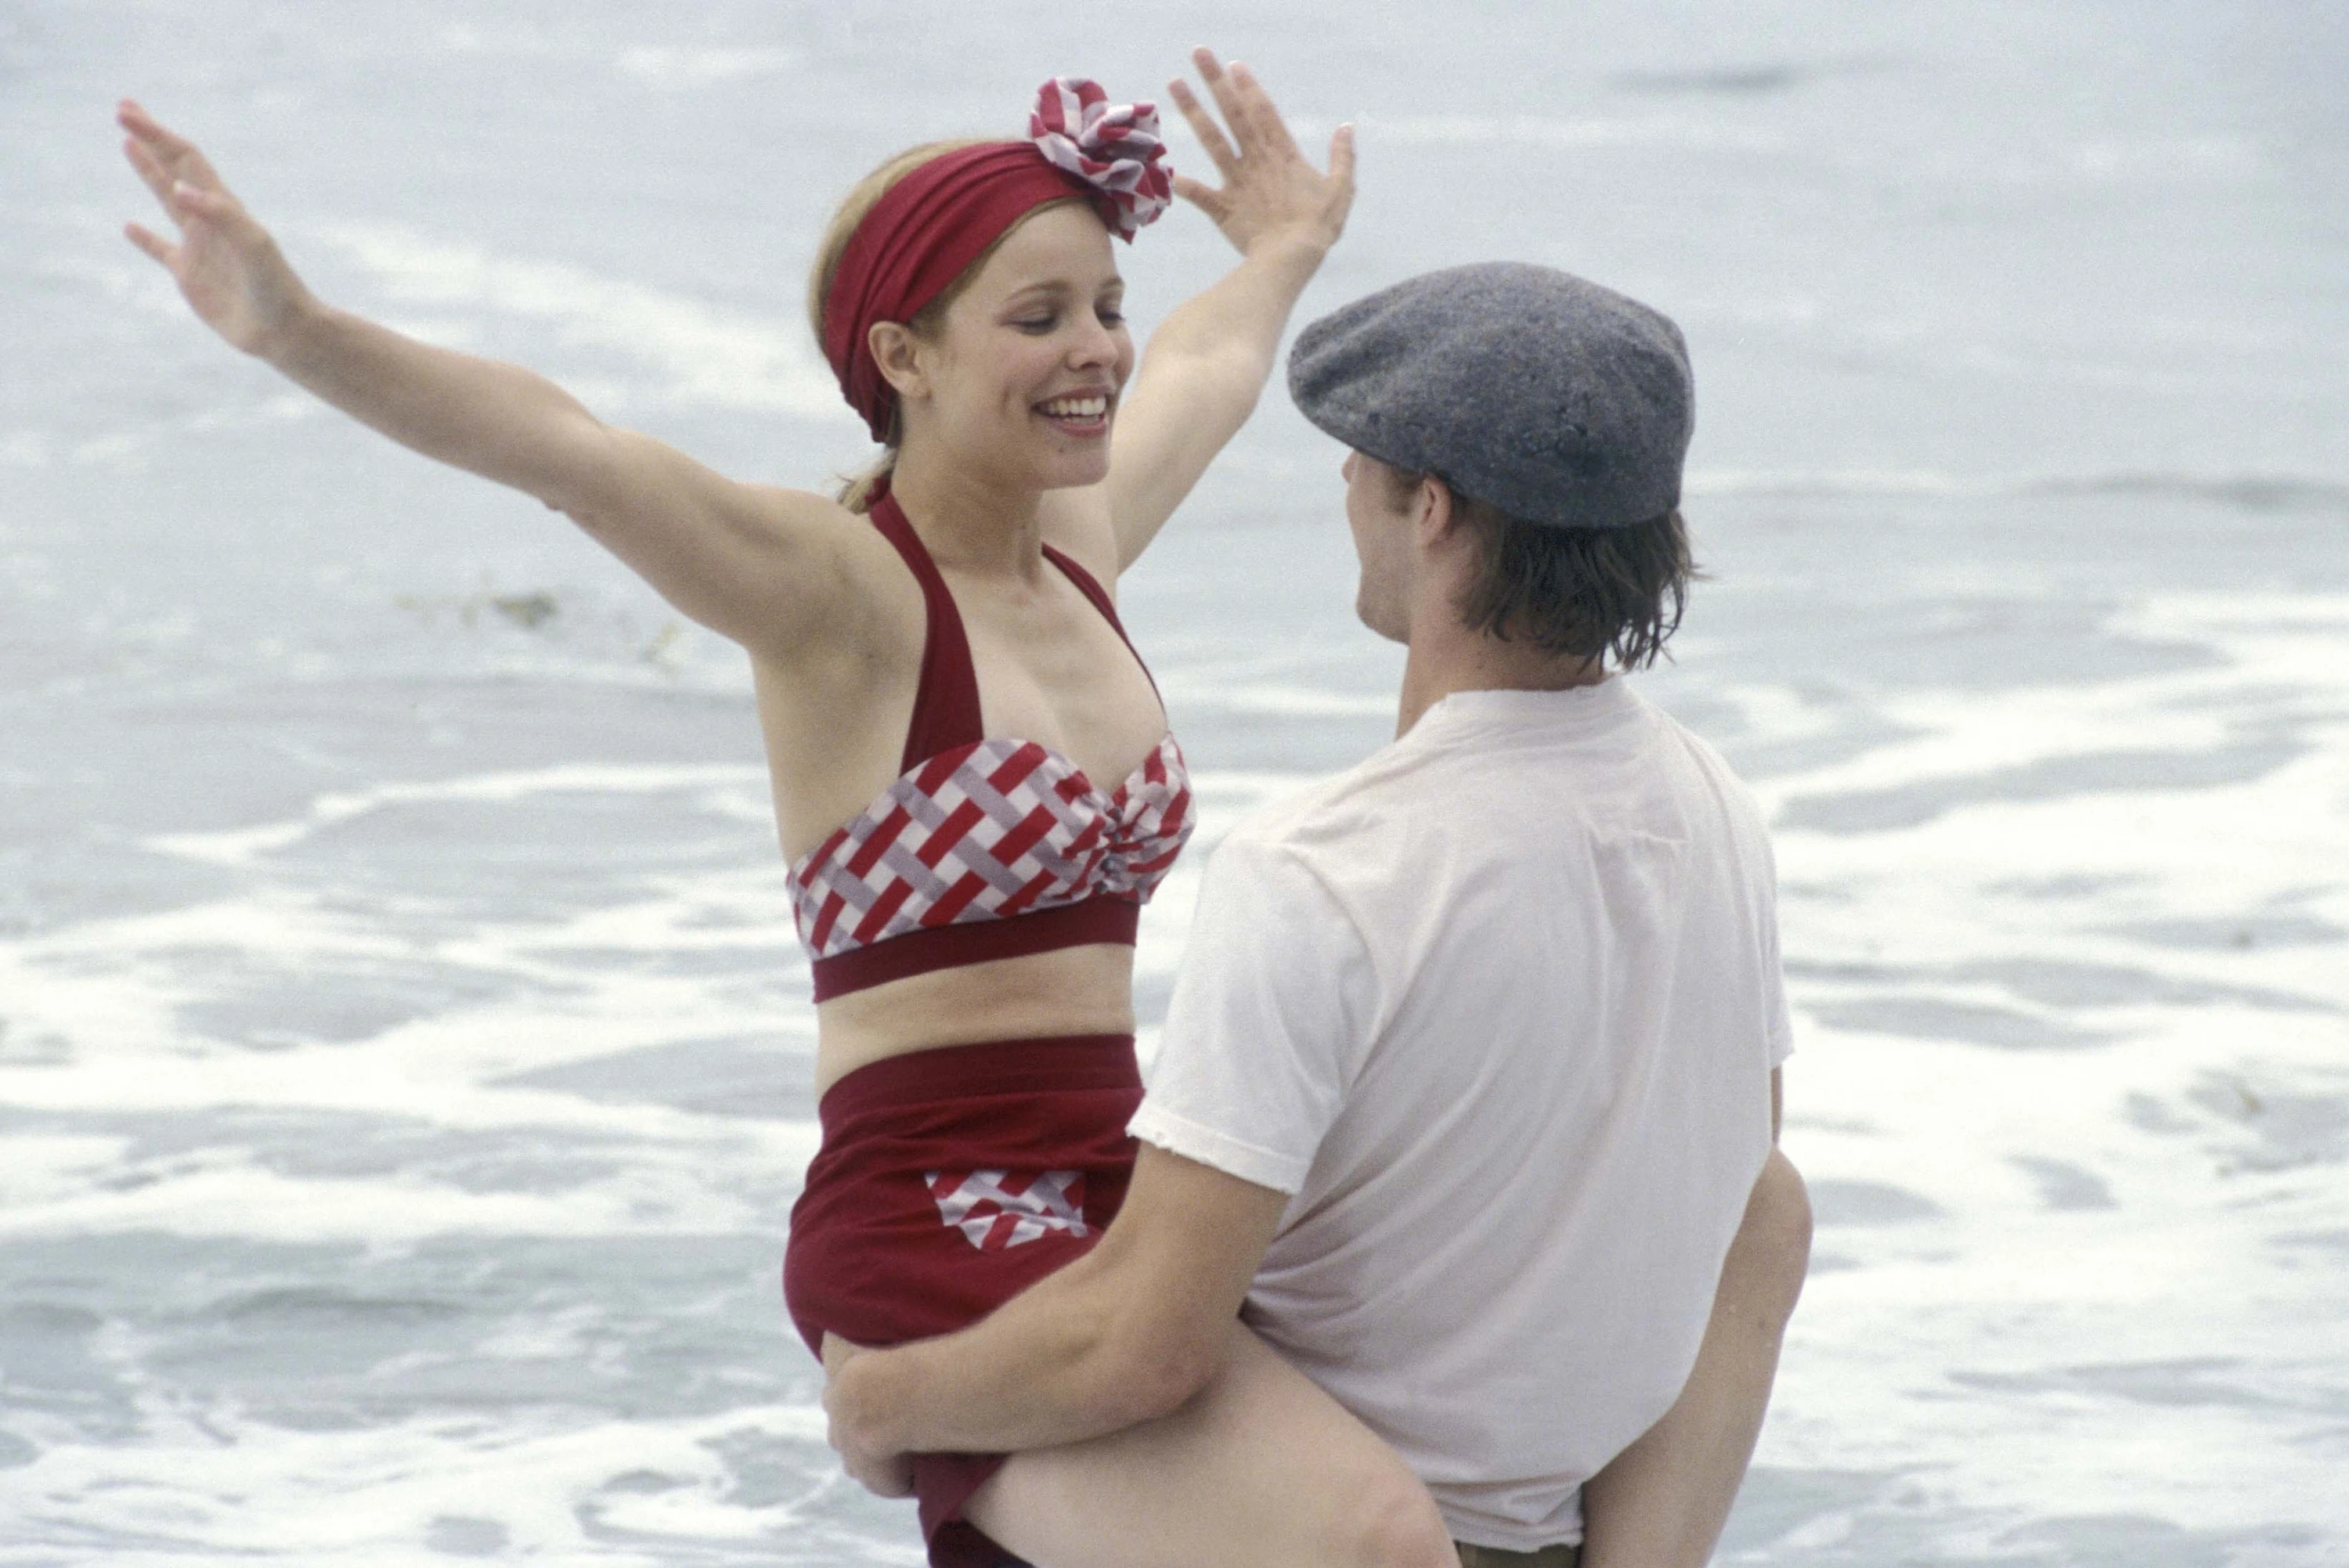 Rachel McAdams as Allie and Ryan Gosling as Noah